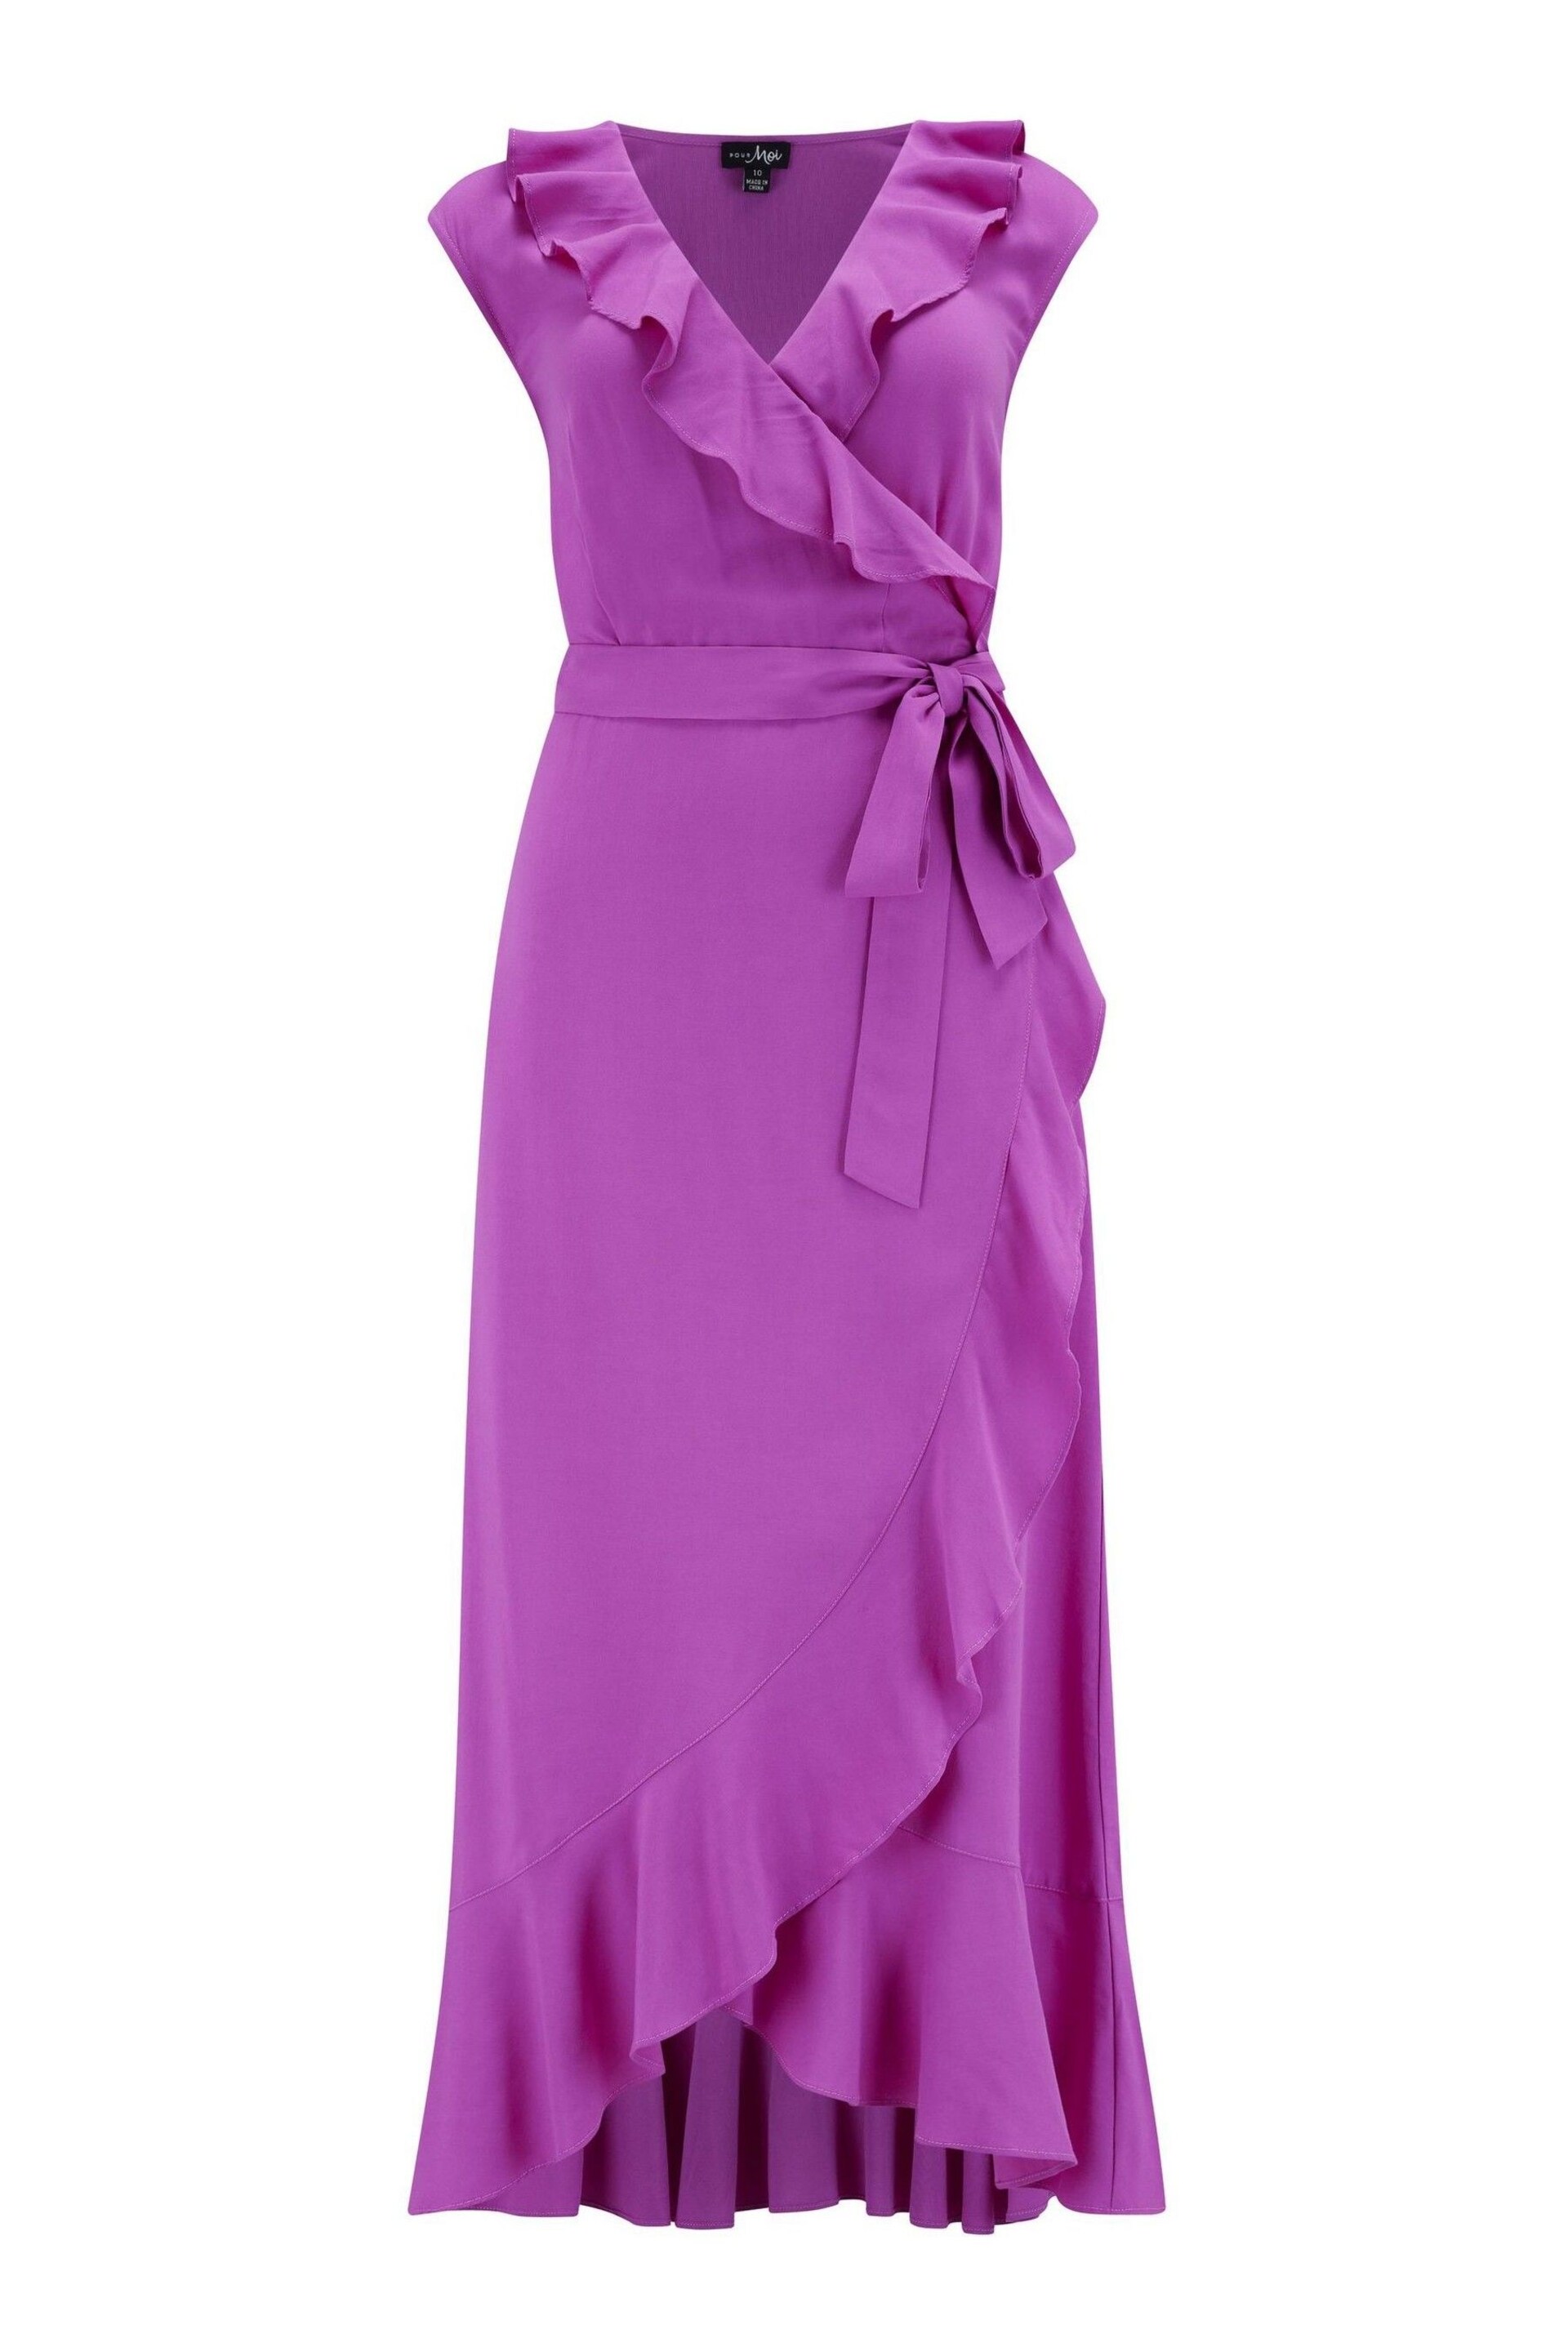 Pour Moi Purple Midaxi Wrap Dress - Image 5 of 6